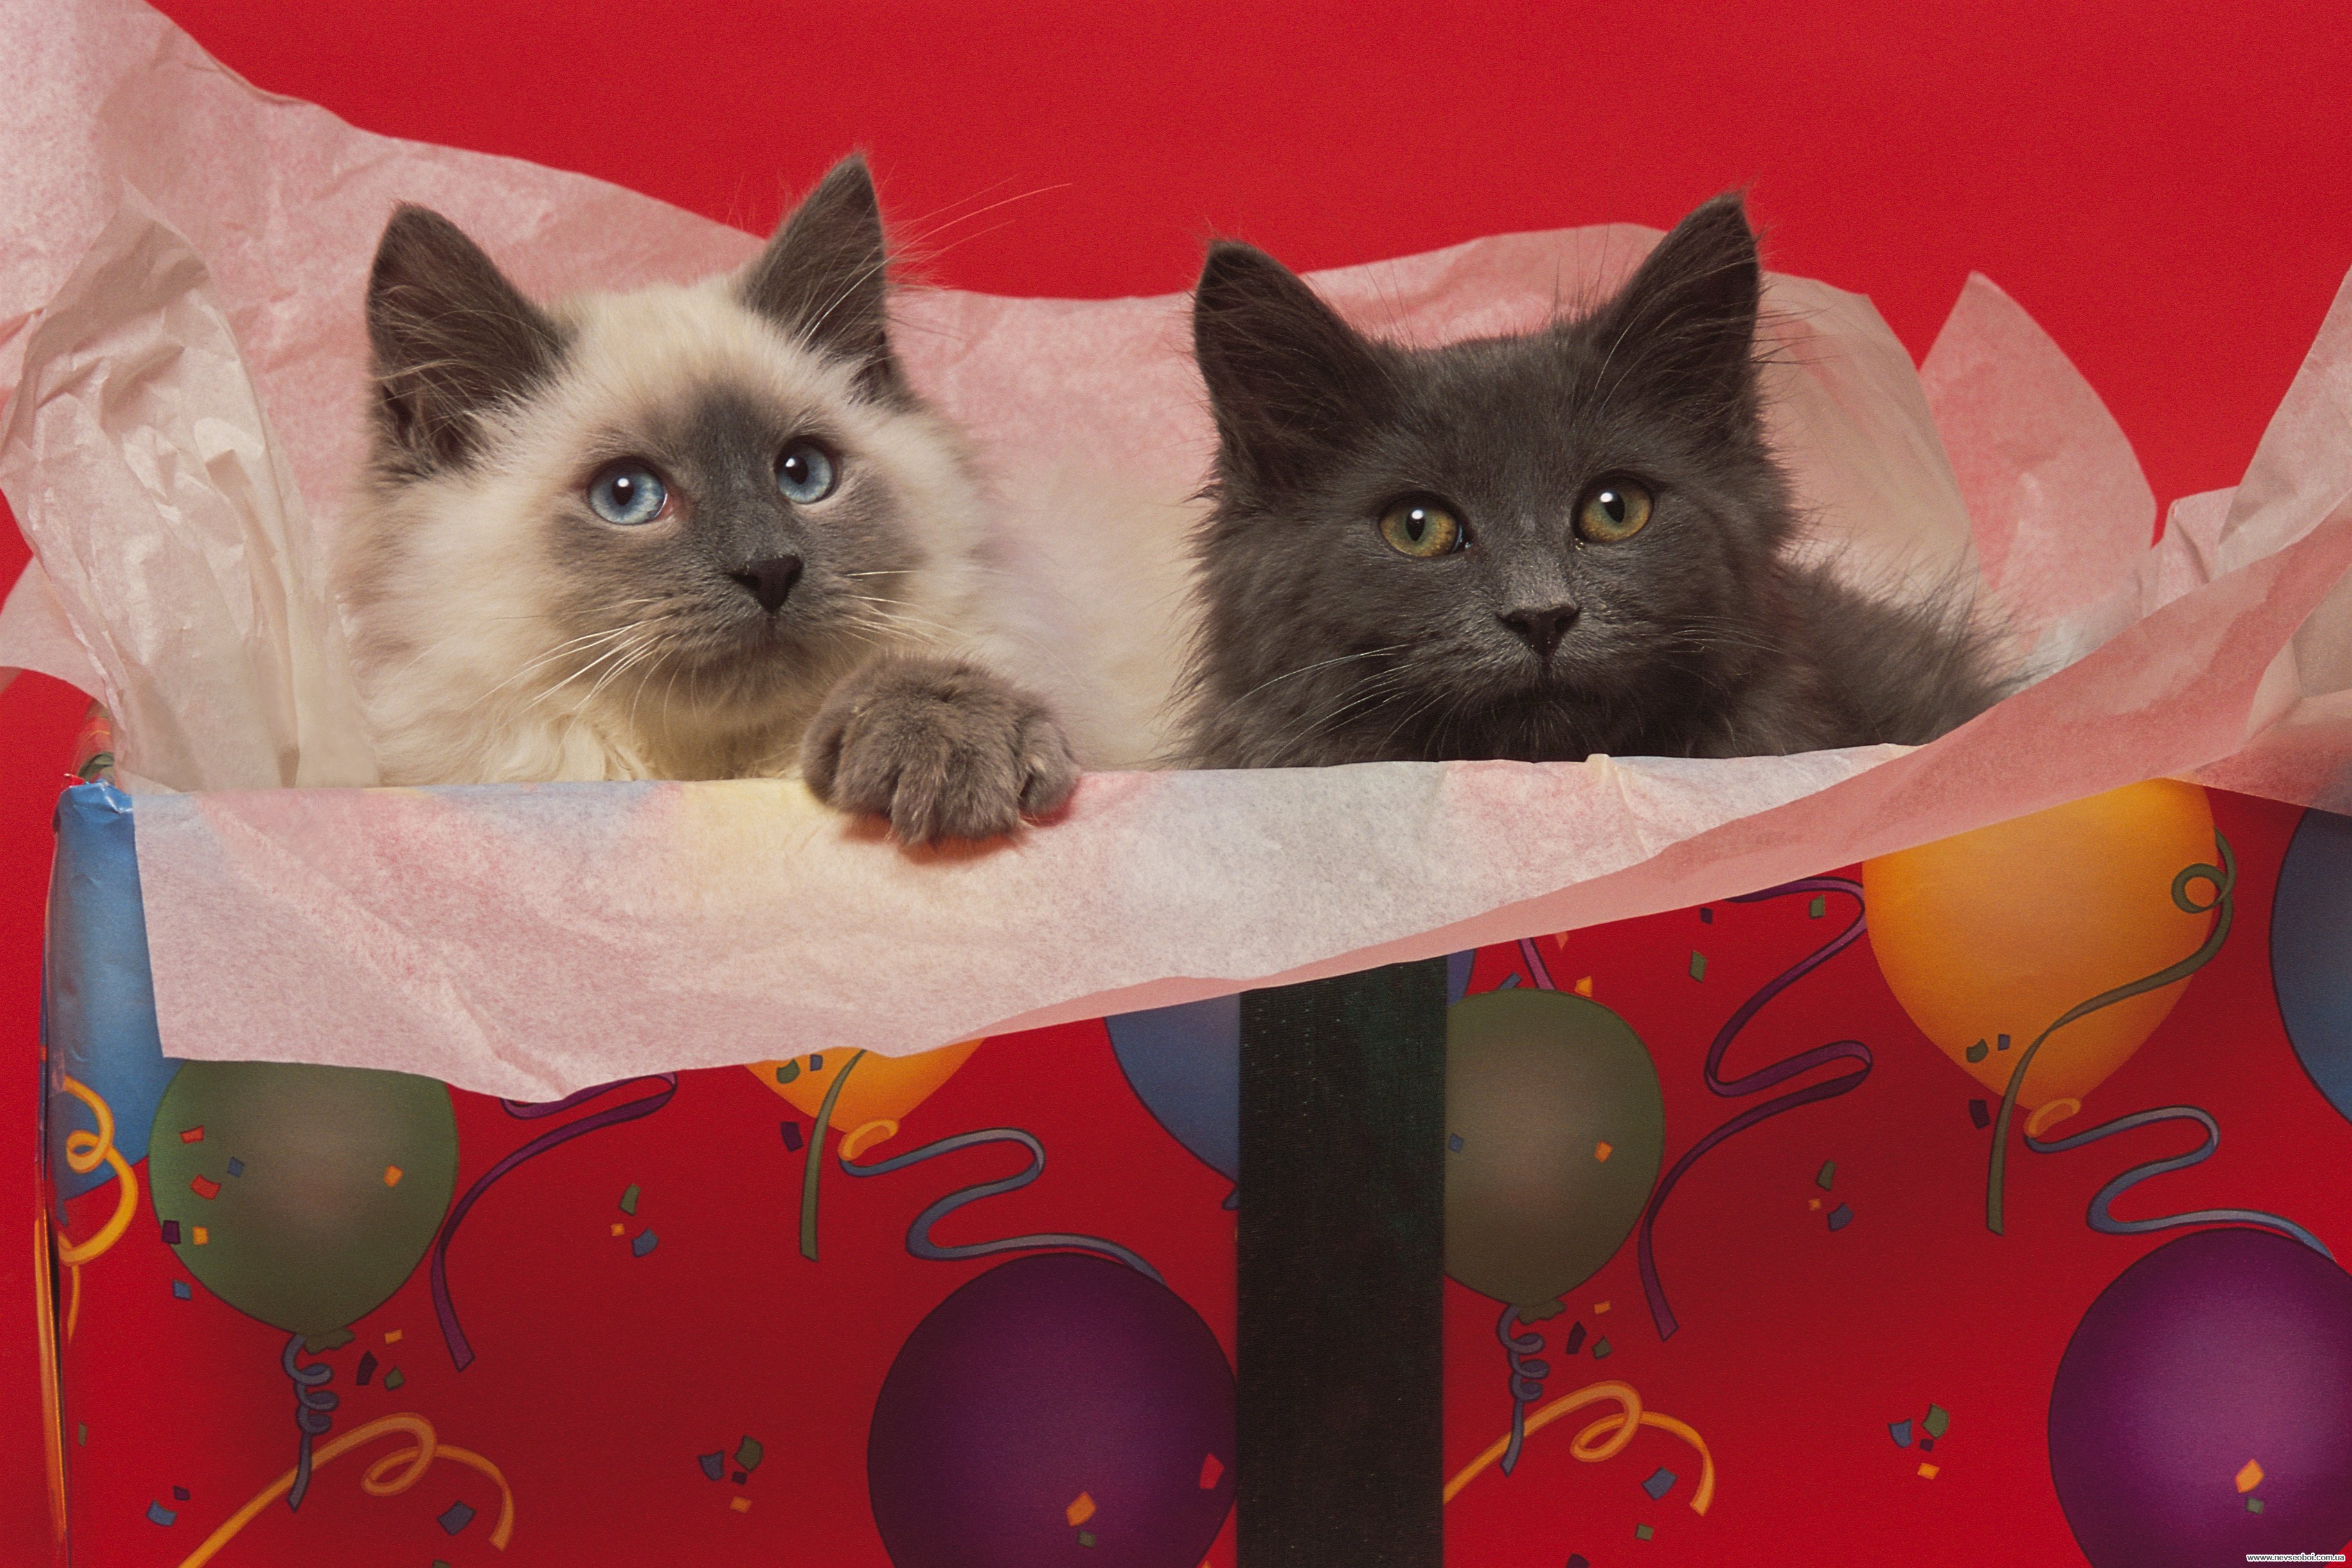 Брачный зов кошки. Картинки коты с журналом. Фотография кота Кэт Непа. Картина Королевские коты и кошки. Друзья навеки смешное фото.